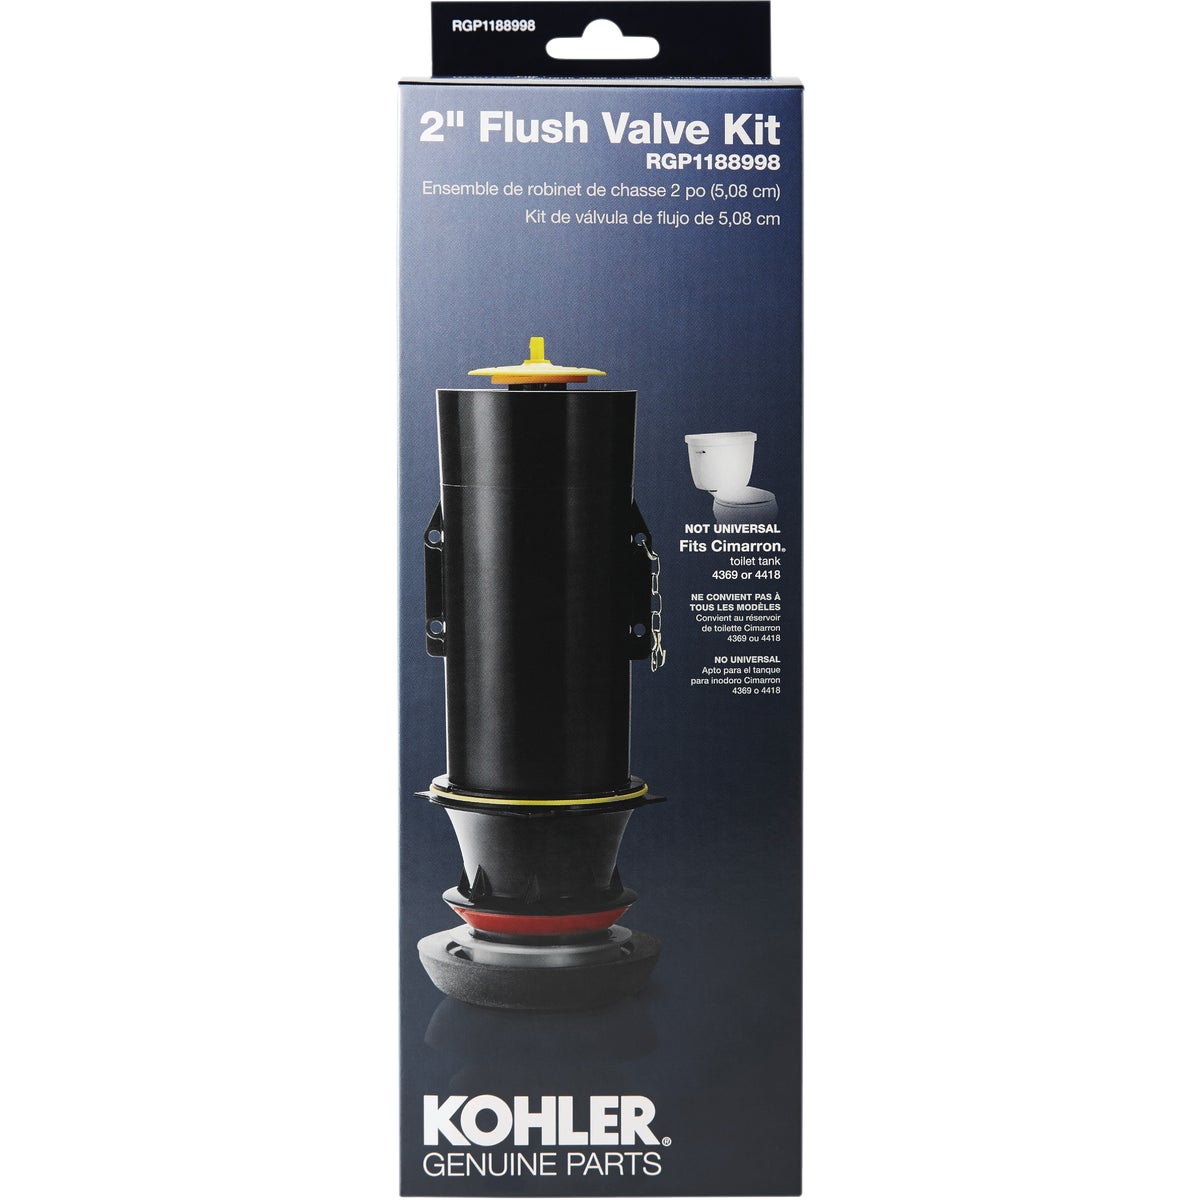 Kohler 2 In. Toilet Canister Flush Valve Repair Kit for Cimarron K-4418/K-4369 Toilets